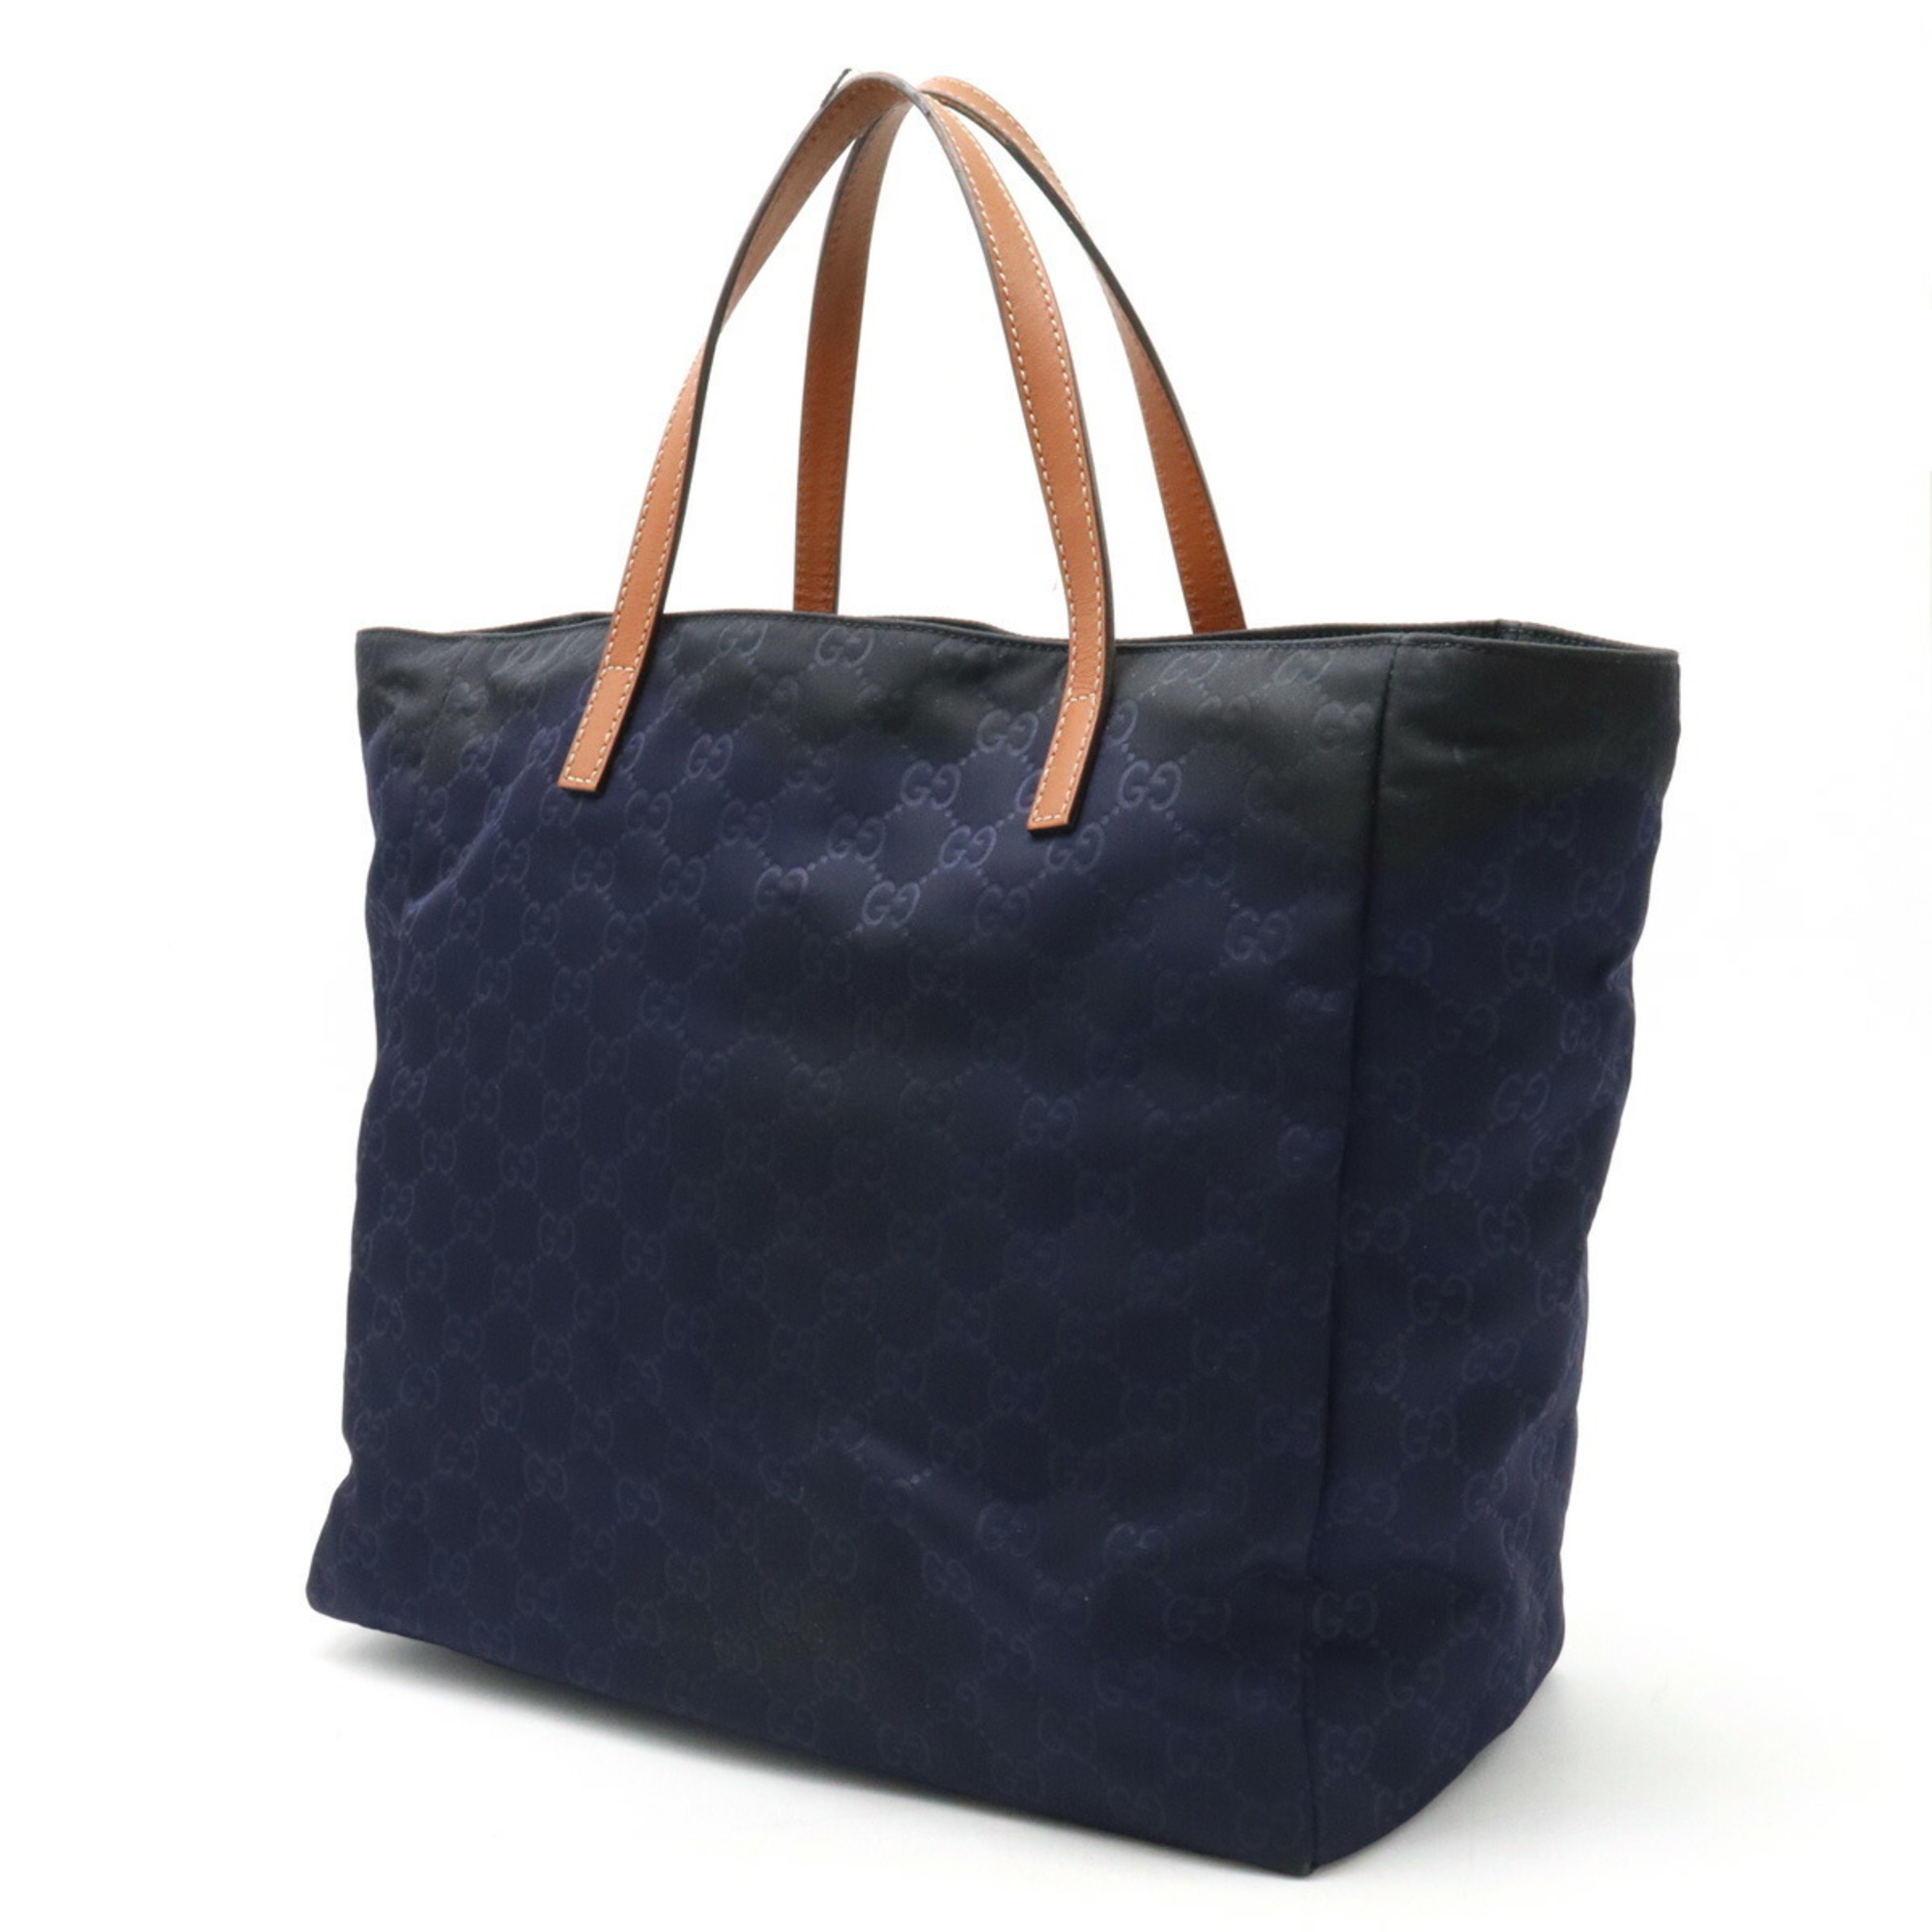 GUCCI GG Nylon Tote Bag Handbag Leather Navy Brown 282439